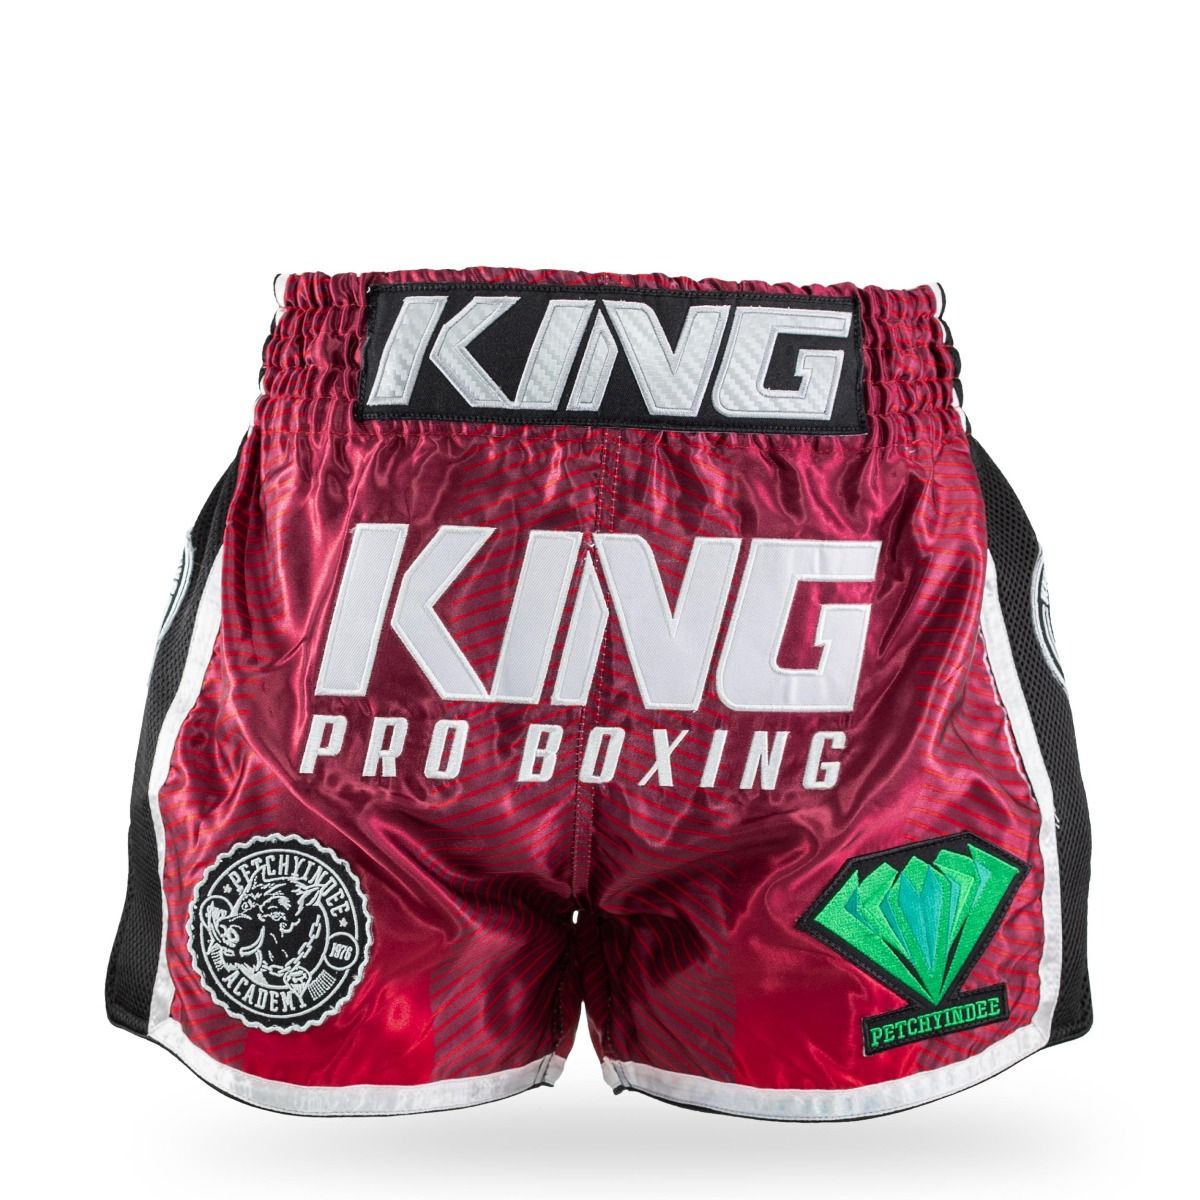 King Pro Boxing - Fightshort - korte broek - PRYDE 1 - rood - groen - zwart